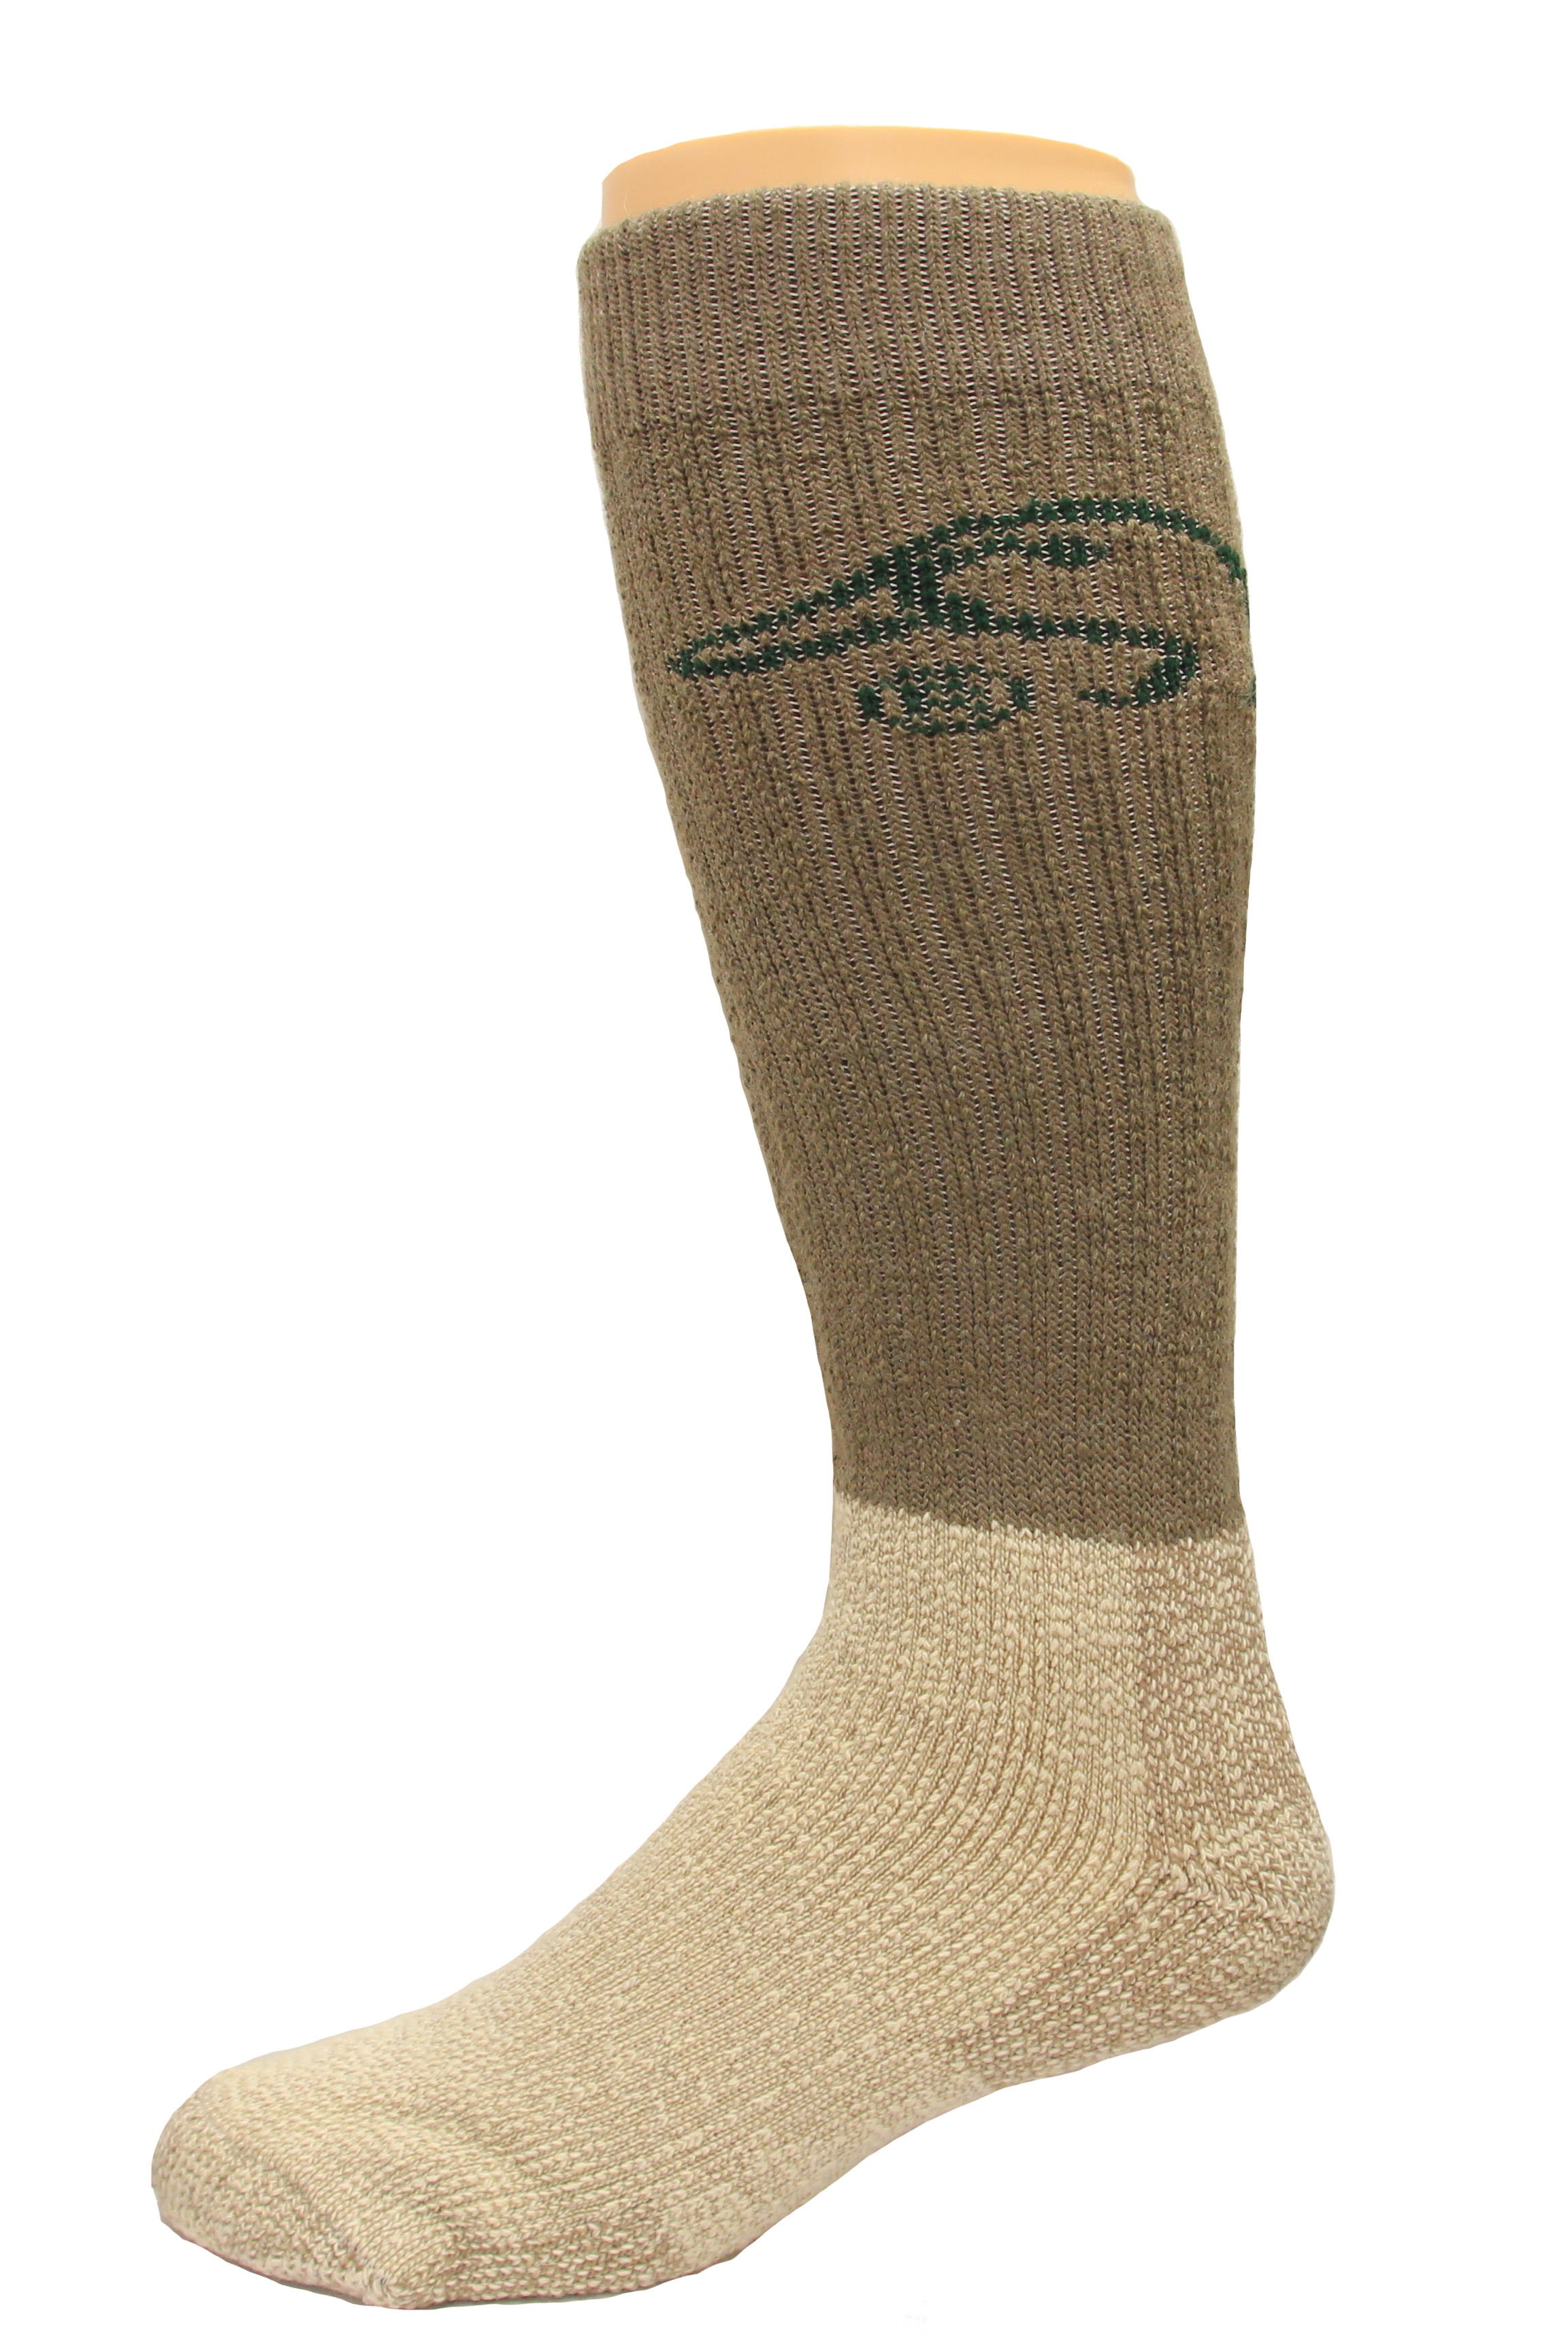 Ducks Unlimited All Season Merino Wool Boot Socks, 1 Pair, Brown 